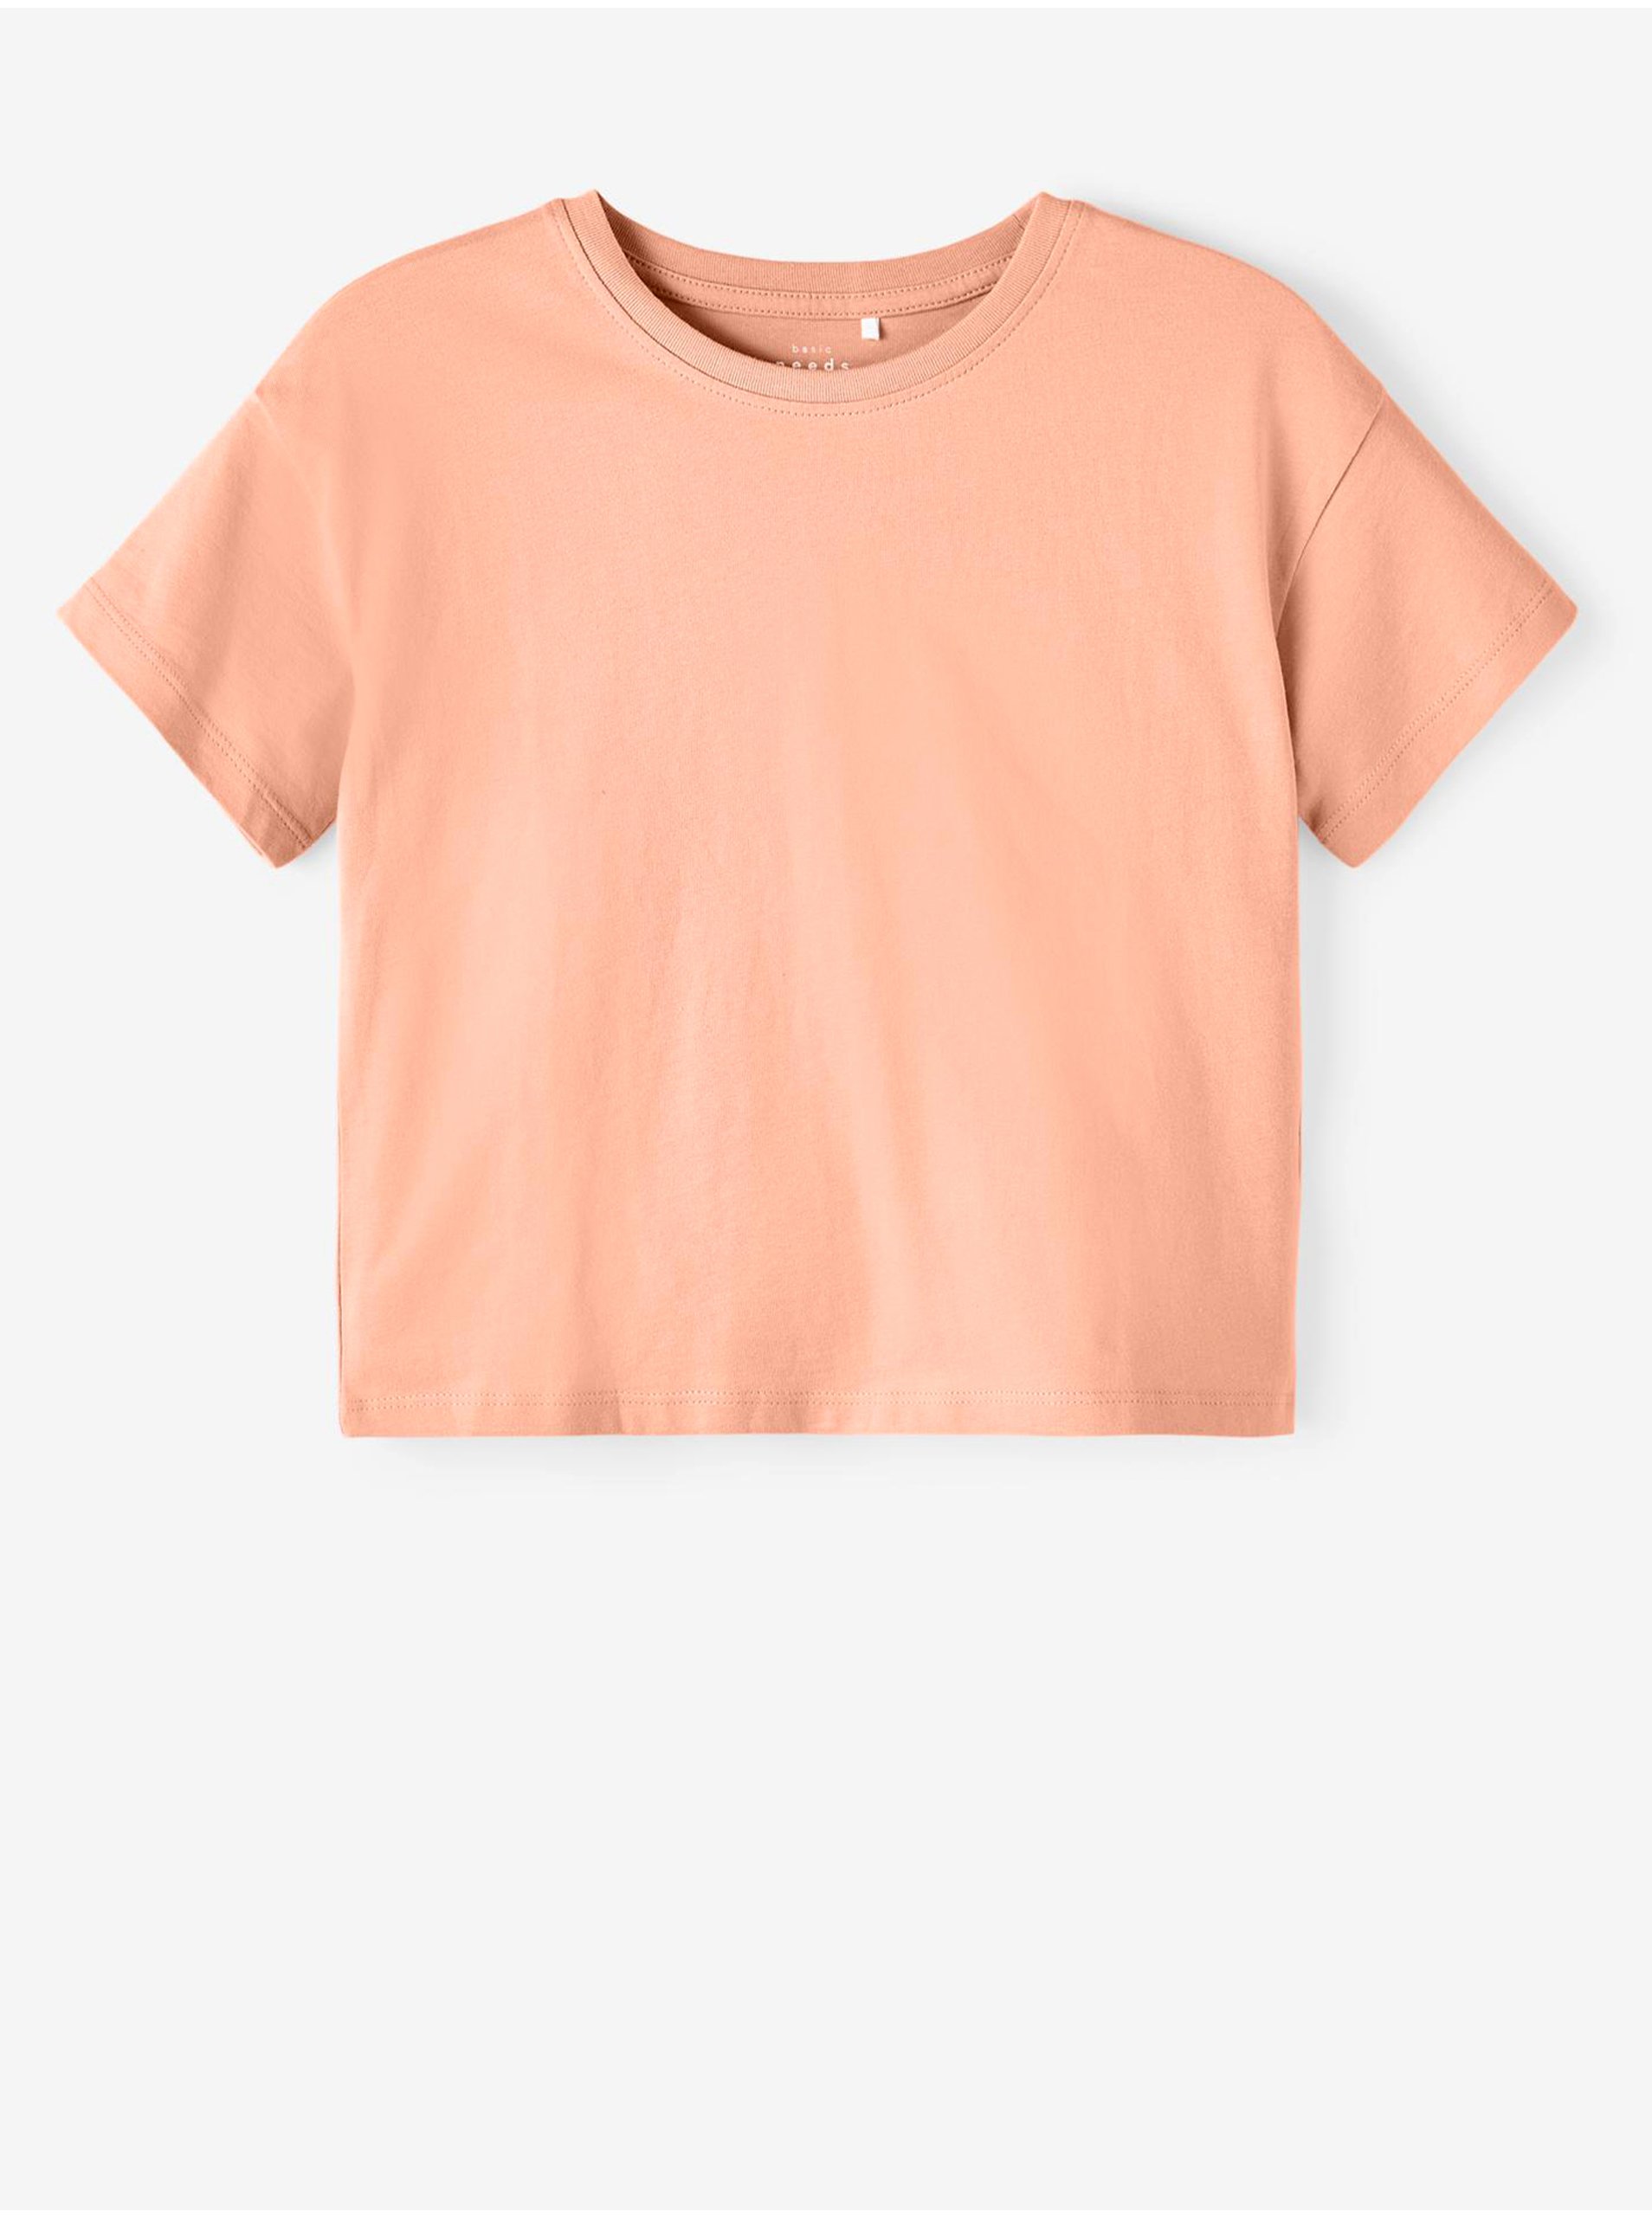 Lacno Marhuľové dievčenské basic tričko name it Vita